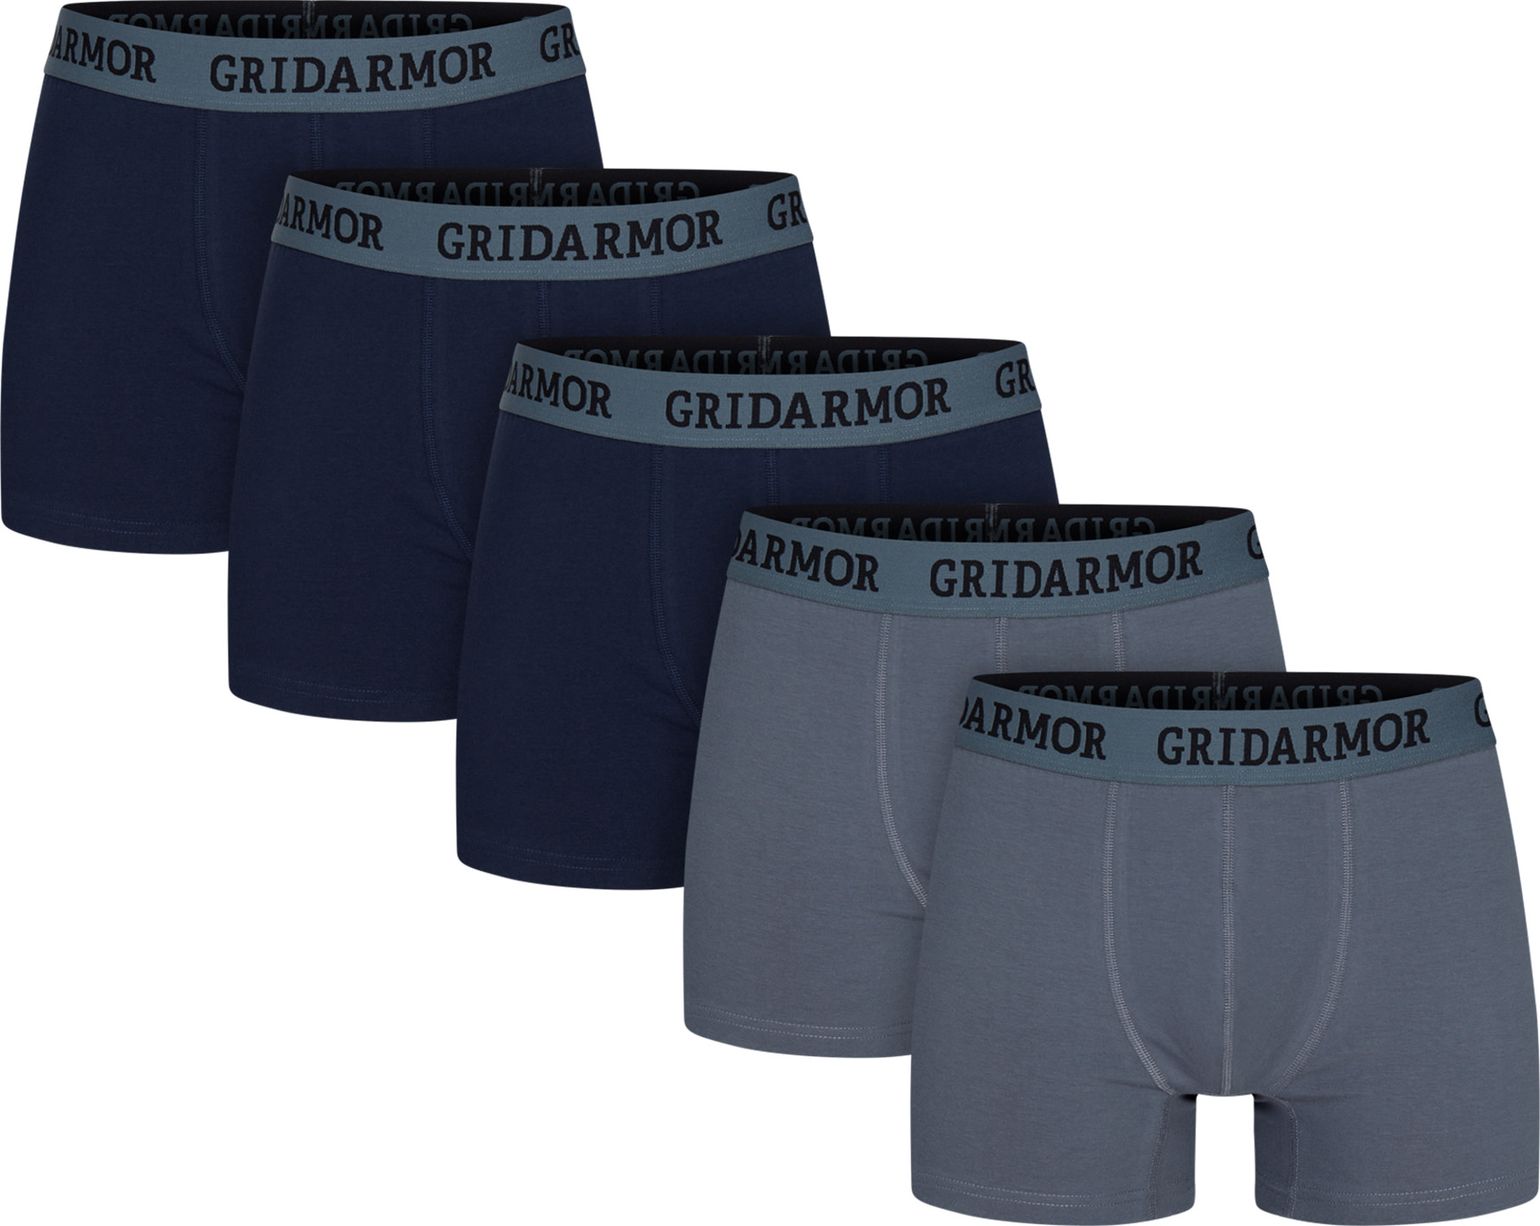 Gridarmor Men's Steine 5p Cotton Boxers 2.0 Multi Color